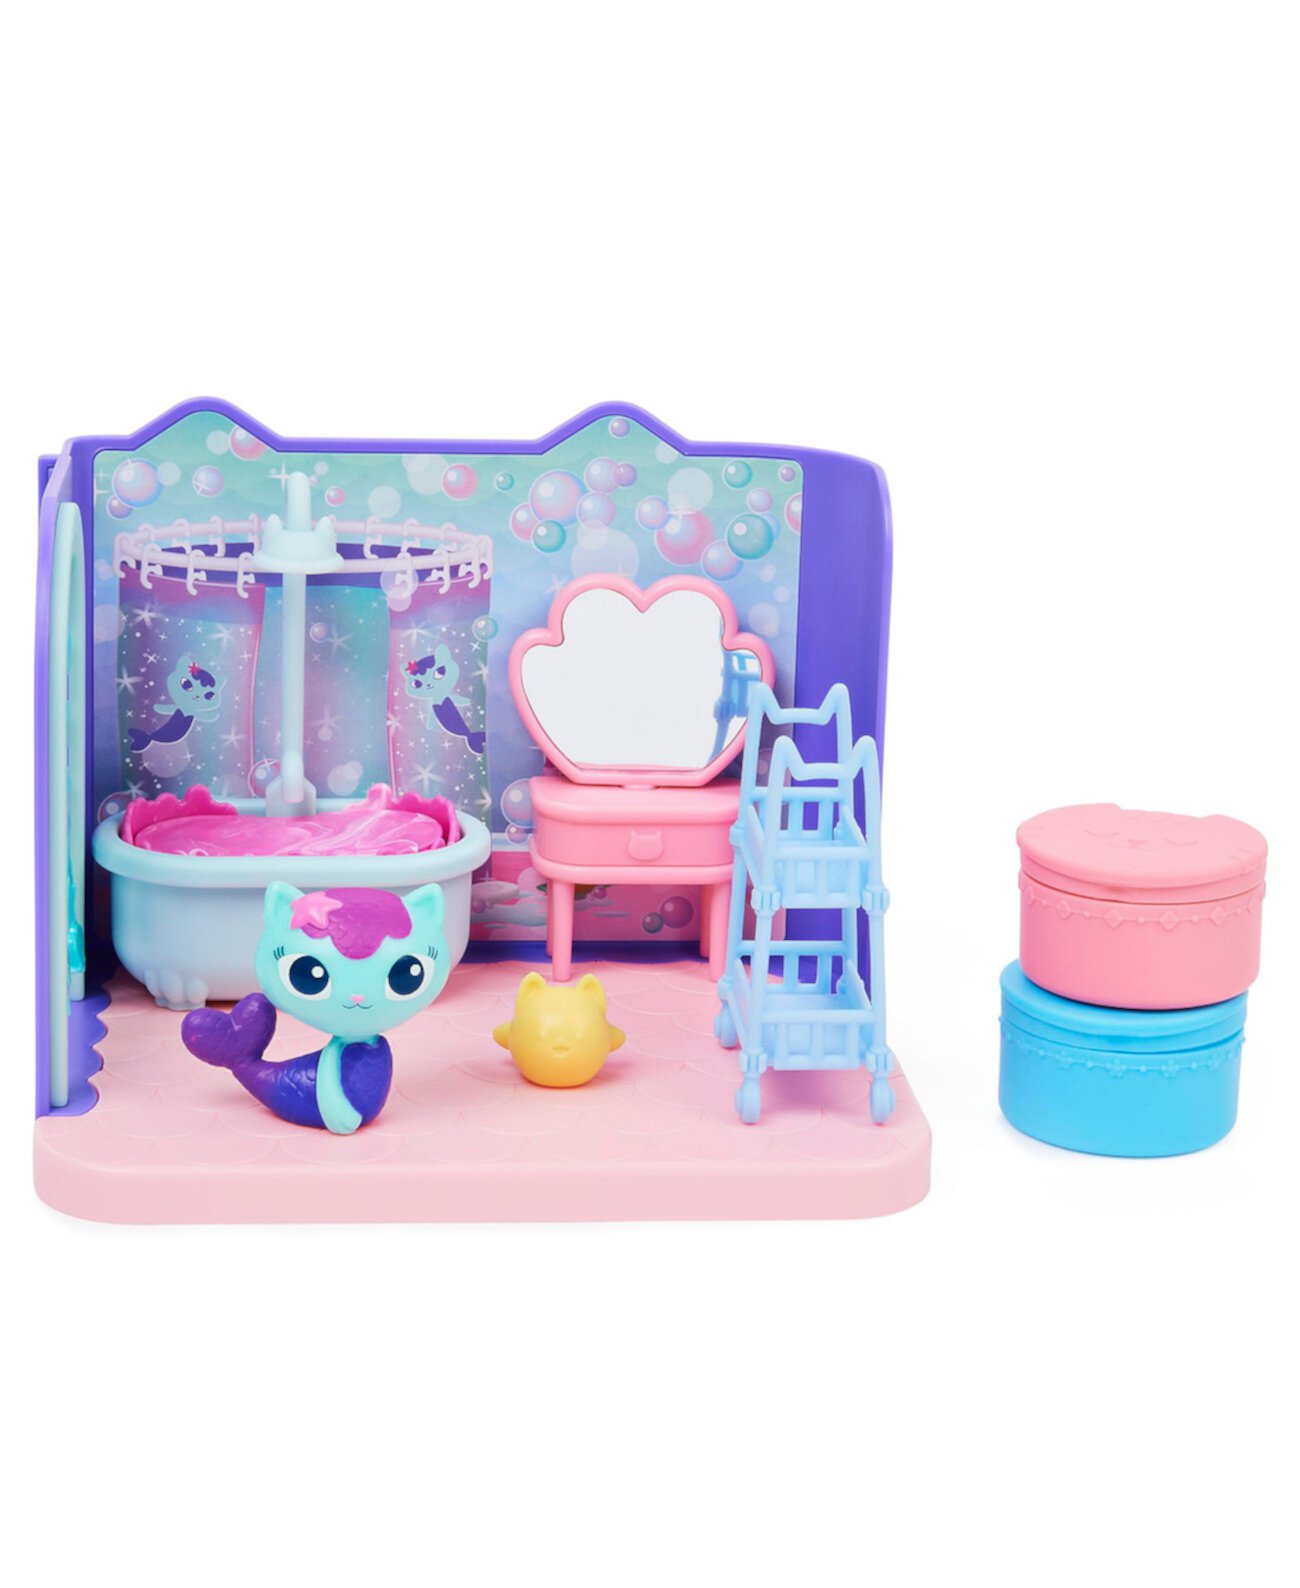 Кукольный домик Габби DreamWorks, ванная комната с фигуркой MerCat, 3 аксессуара, 3 предмета мебели и 2 предмета доставки, детские игрушки для детей от 3 лет и старше Gabby's Dollhouse